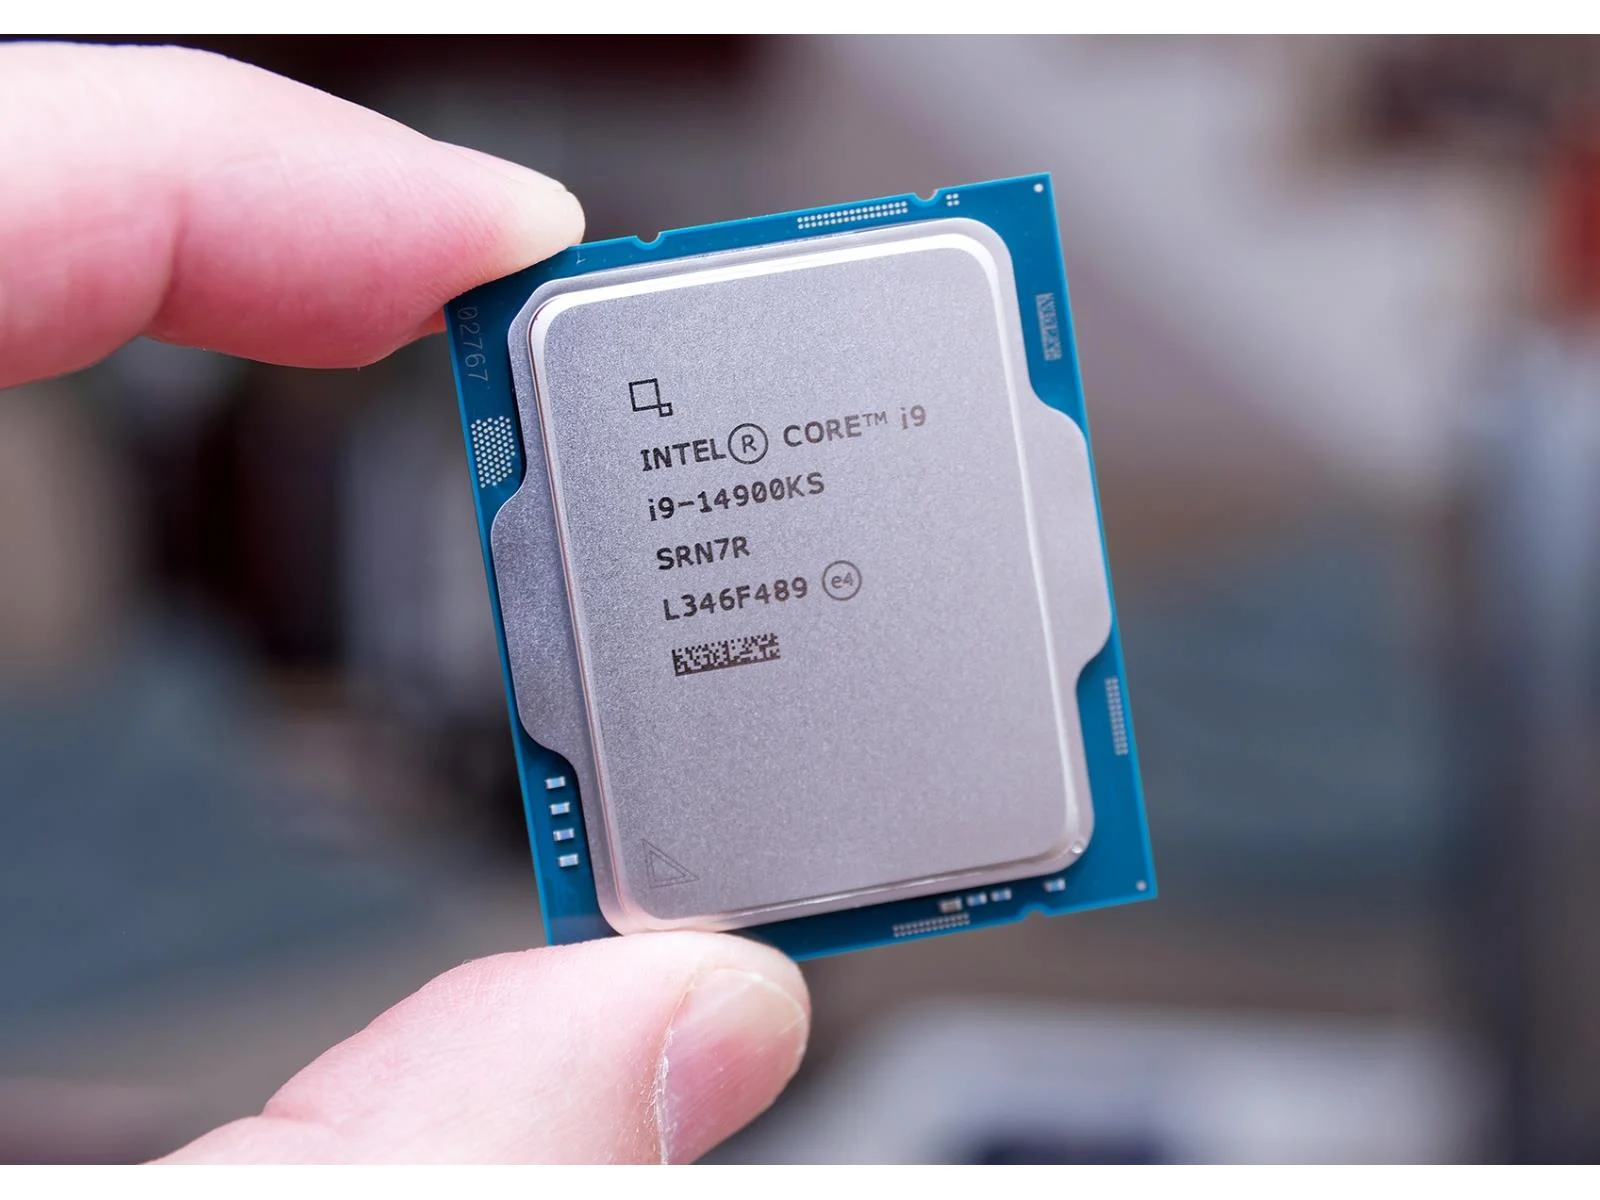 Intel si producatorii de placi de baza nu sunt de acord cu privire la modul de stabilizare a procesorului i9 care se blocheaza